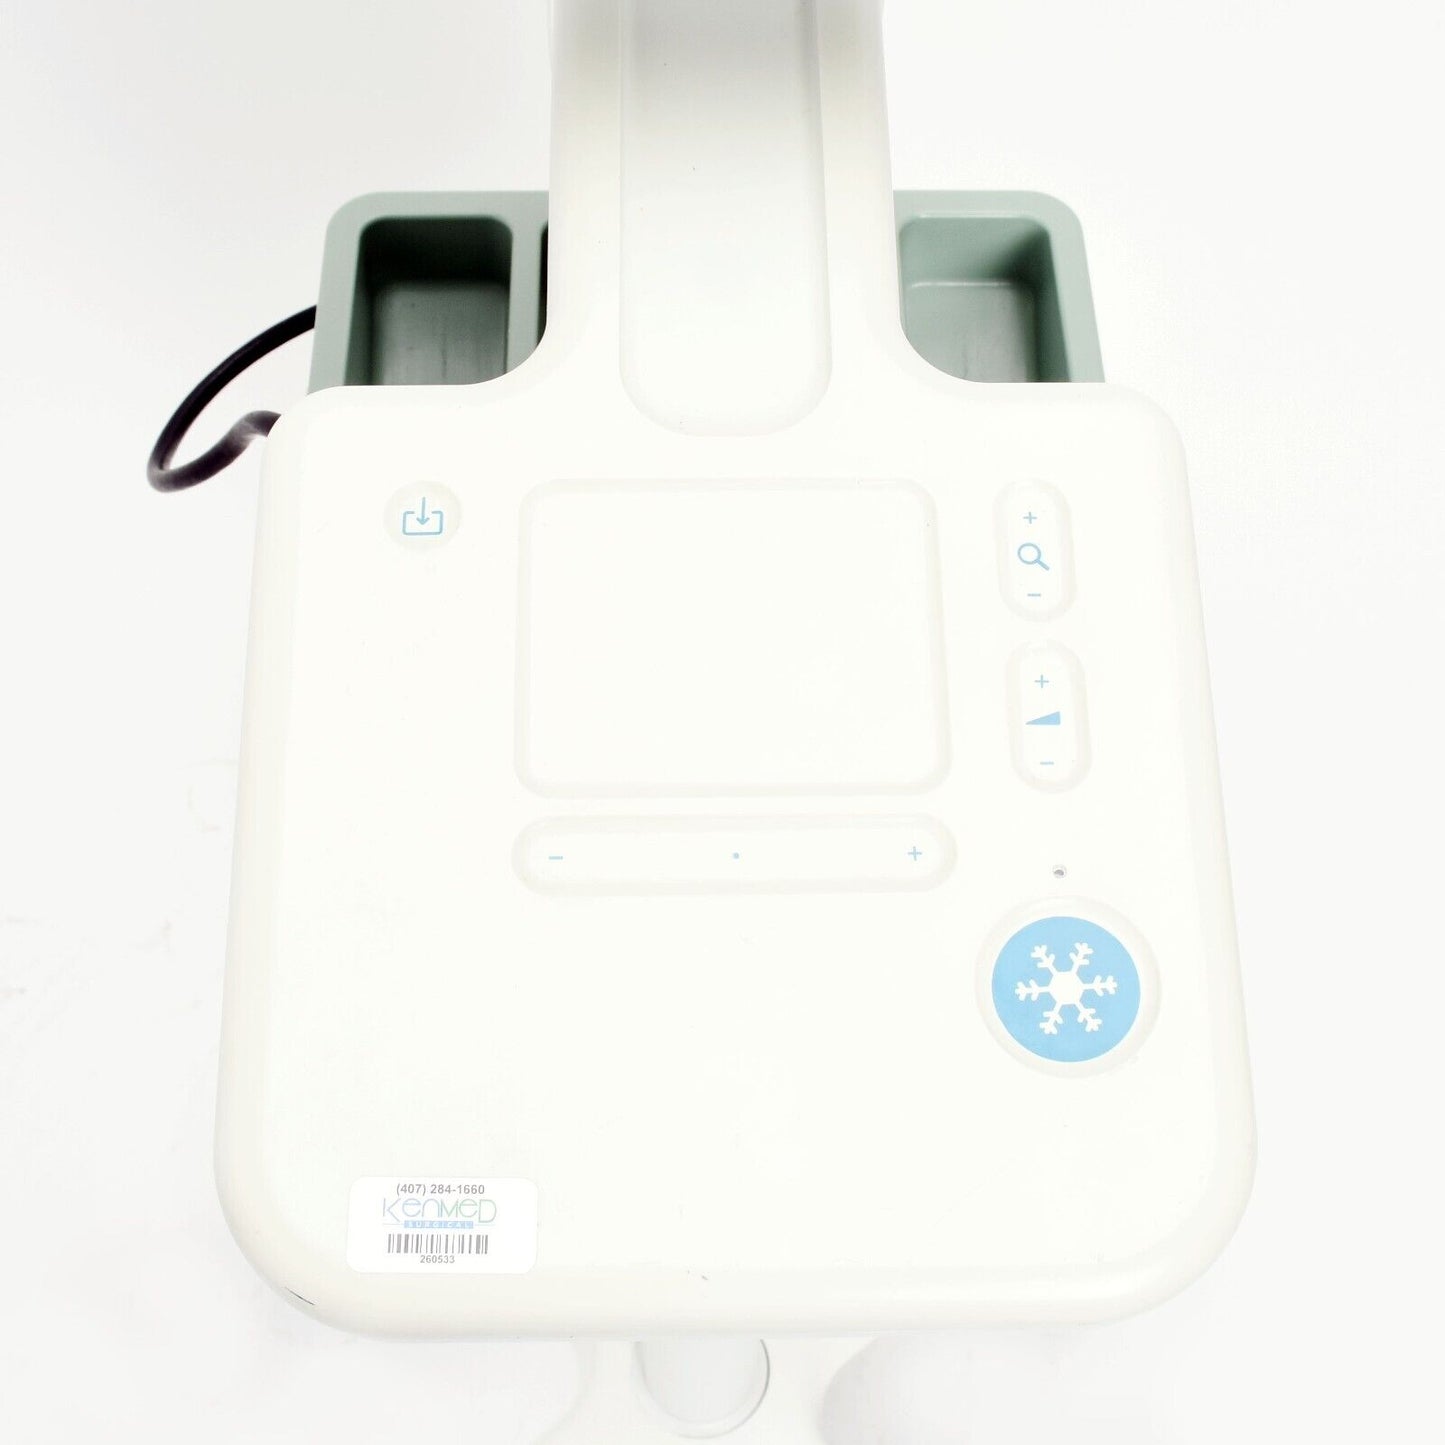 BK Medical Flex Focus 800 Ultrasound Scanner; Transducer 8826 88 1202 UP-D897 UA1237